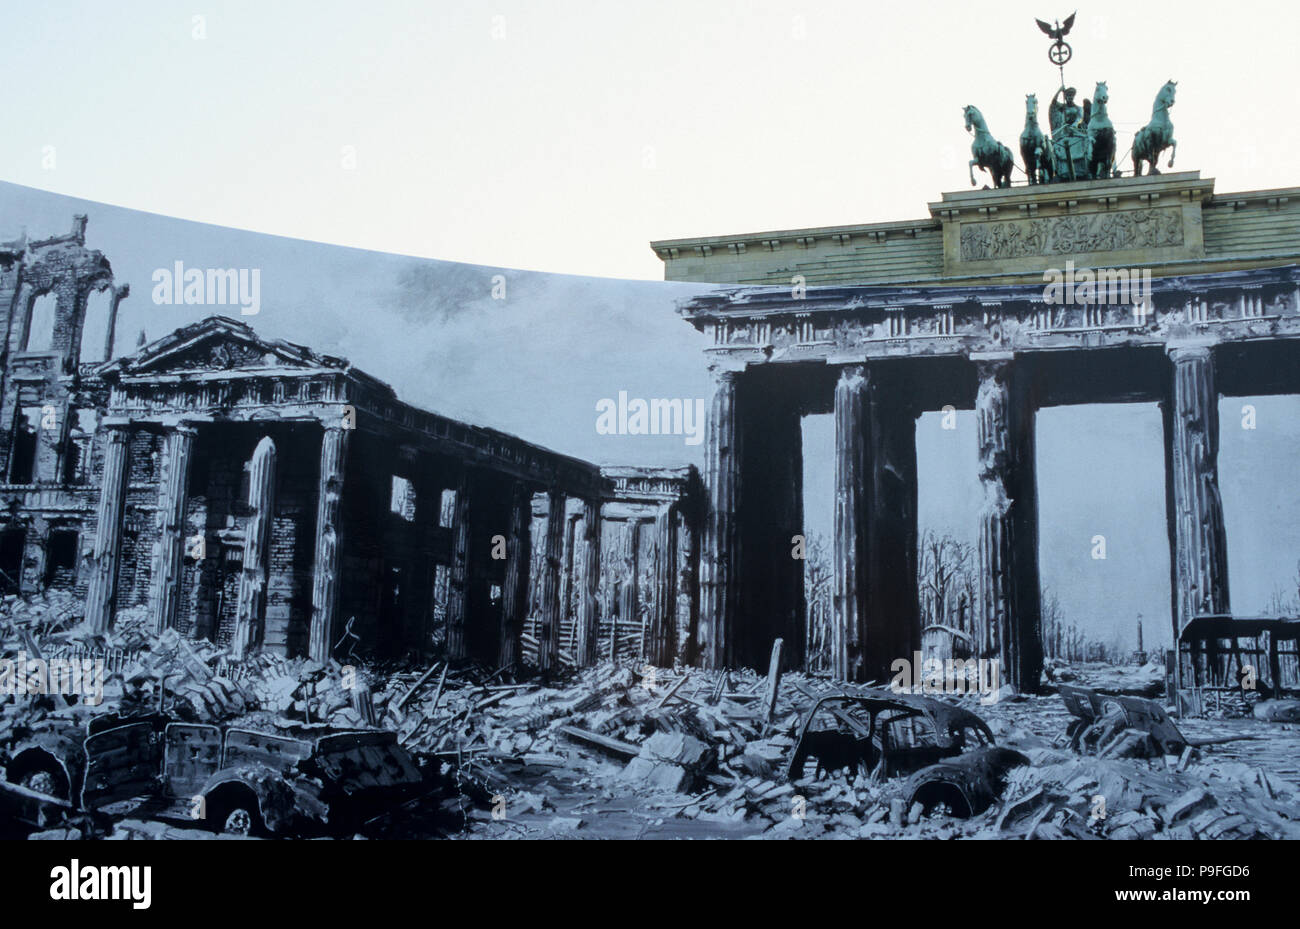 Germania, Berlino, Porta di Brandeburgo con la scultura Quadriga, sulla parte superiore della dea romana Victoria è in sella ad un cavallo-carro motorizzato a portare la pace la città, costruito 1789-1793, mostra all'aperto con le foto della II guerra mondiale, il cancello era fino al 1989 una parte del confine e parete diviso tra Berlino Ovest e Berlino est ed è oggi un simbolo della riunificazione, durante una visita a Berlino 1987 il presidente statunitense Ronald Reagan ha detto al gate: 'Mr. Gorbaciov, aprire questa porta il sig. Gorbaciov, ad abbattere questo muro!" Foto Stock